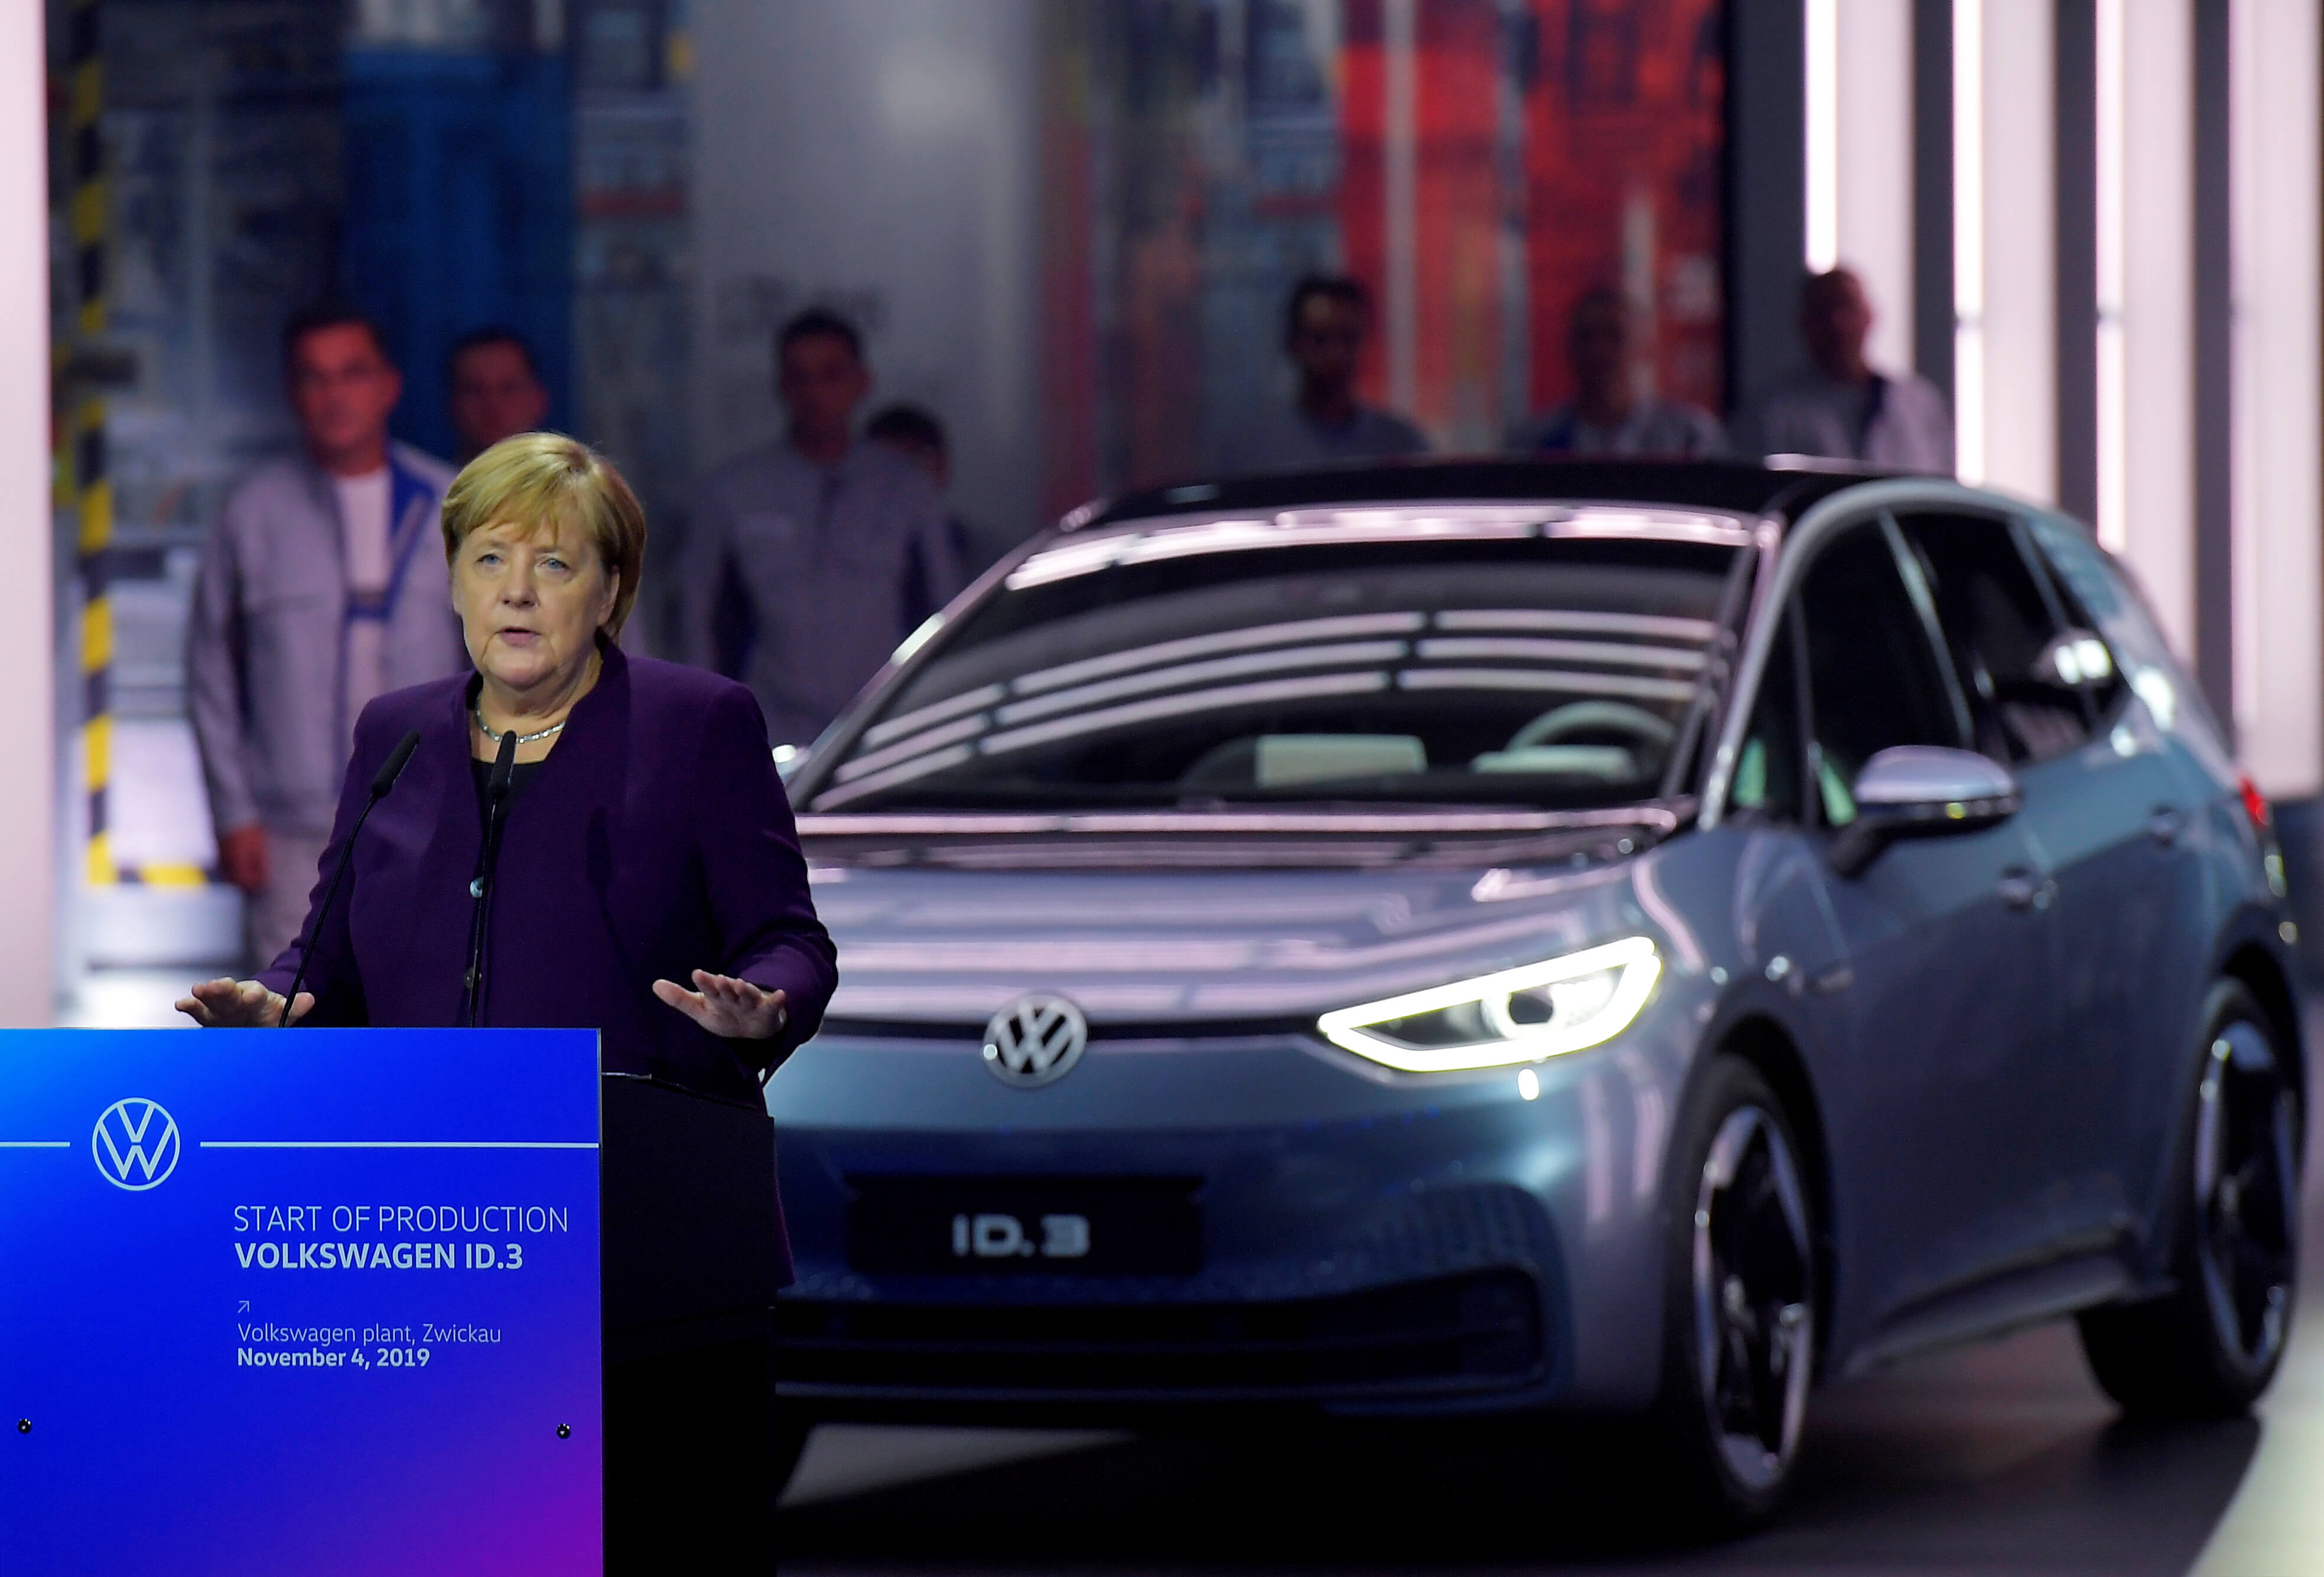 Holslag - Bondskanselier Angela Merkel bezoekt een Volkswagen-fabriek in Zwickau in 2019. REUTERS - Matthias Rietschel 